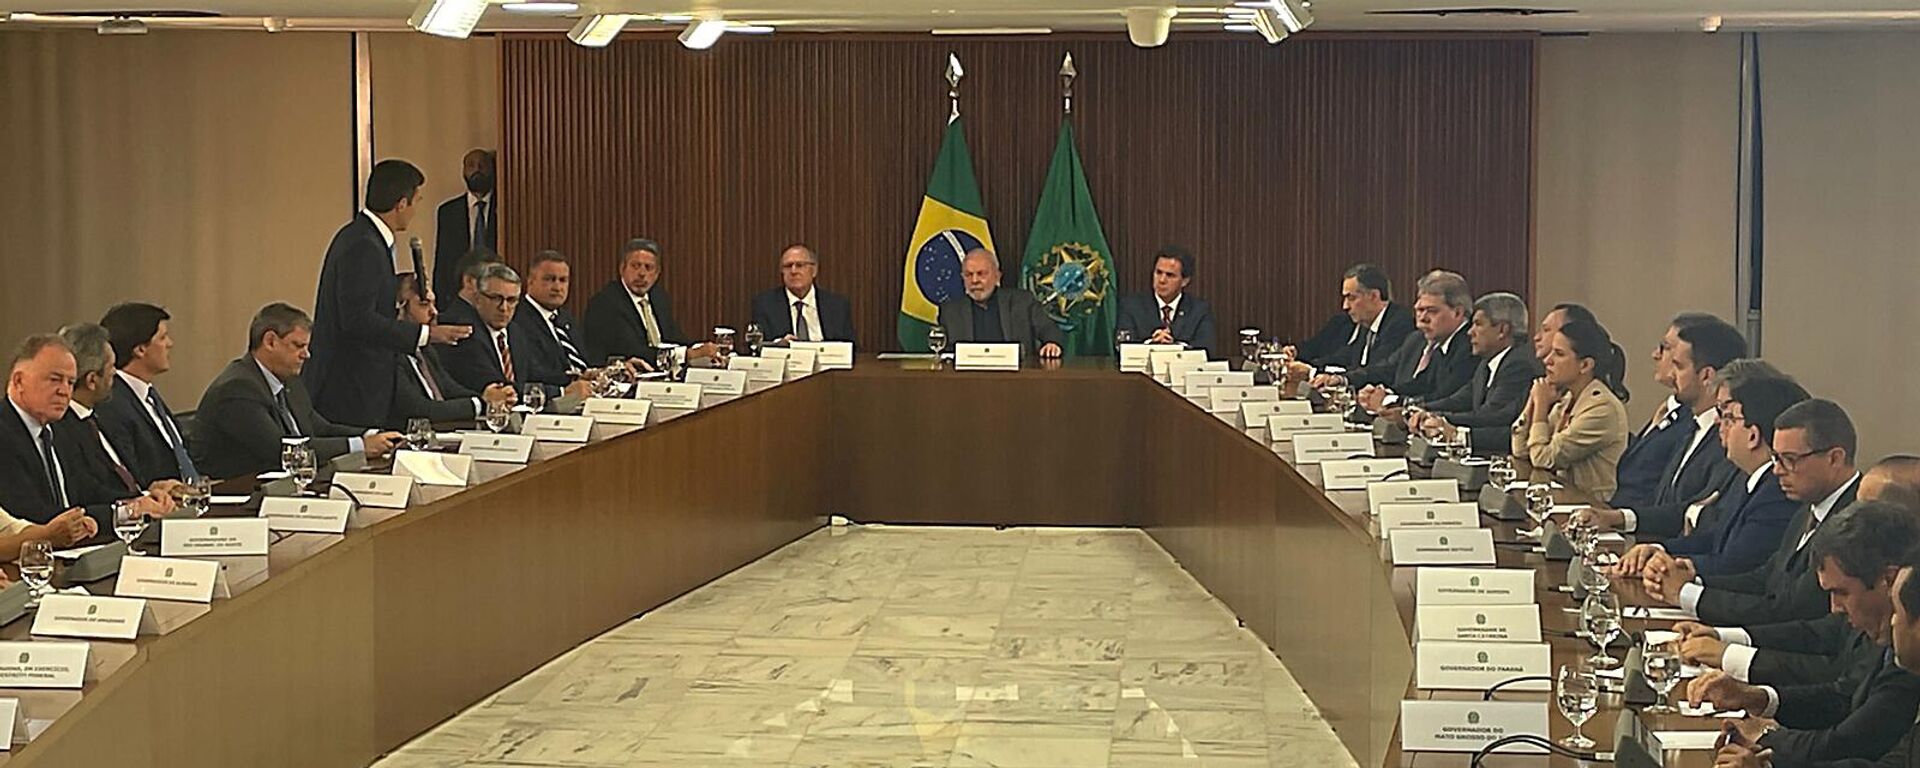 No dia 9 de janeiro de 2023, o presidente Luiz Inácio Lula da Silva (PT) se reúne com governadores e ministros do Supremo Tribunal Federal (STF) para tratar da invasão de bolsonaristas do Congresso Nacional, do Palácio do Planalto e da Suprema Corte - Sputnik Brasil, 1920, 09.01.2023